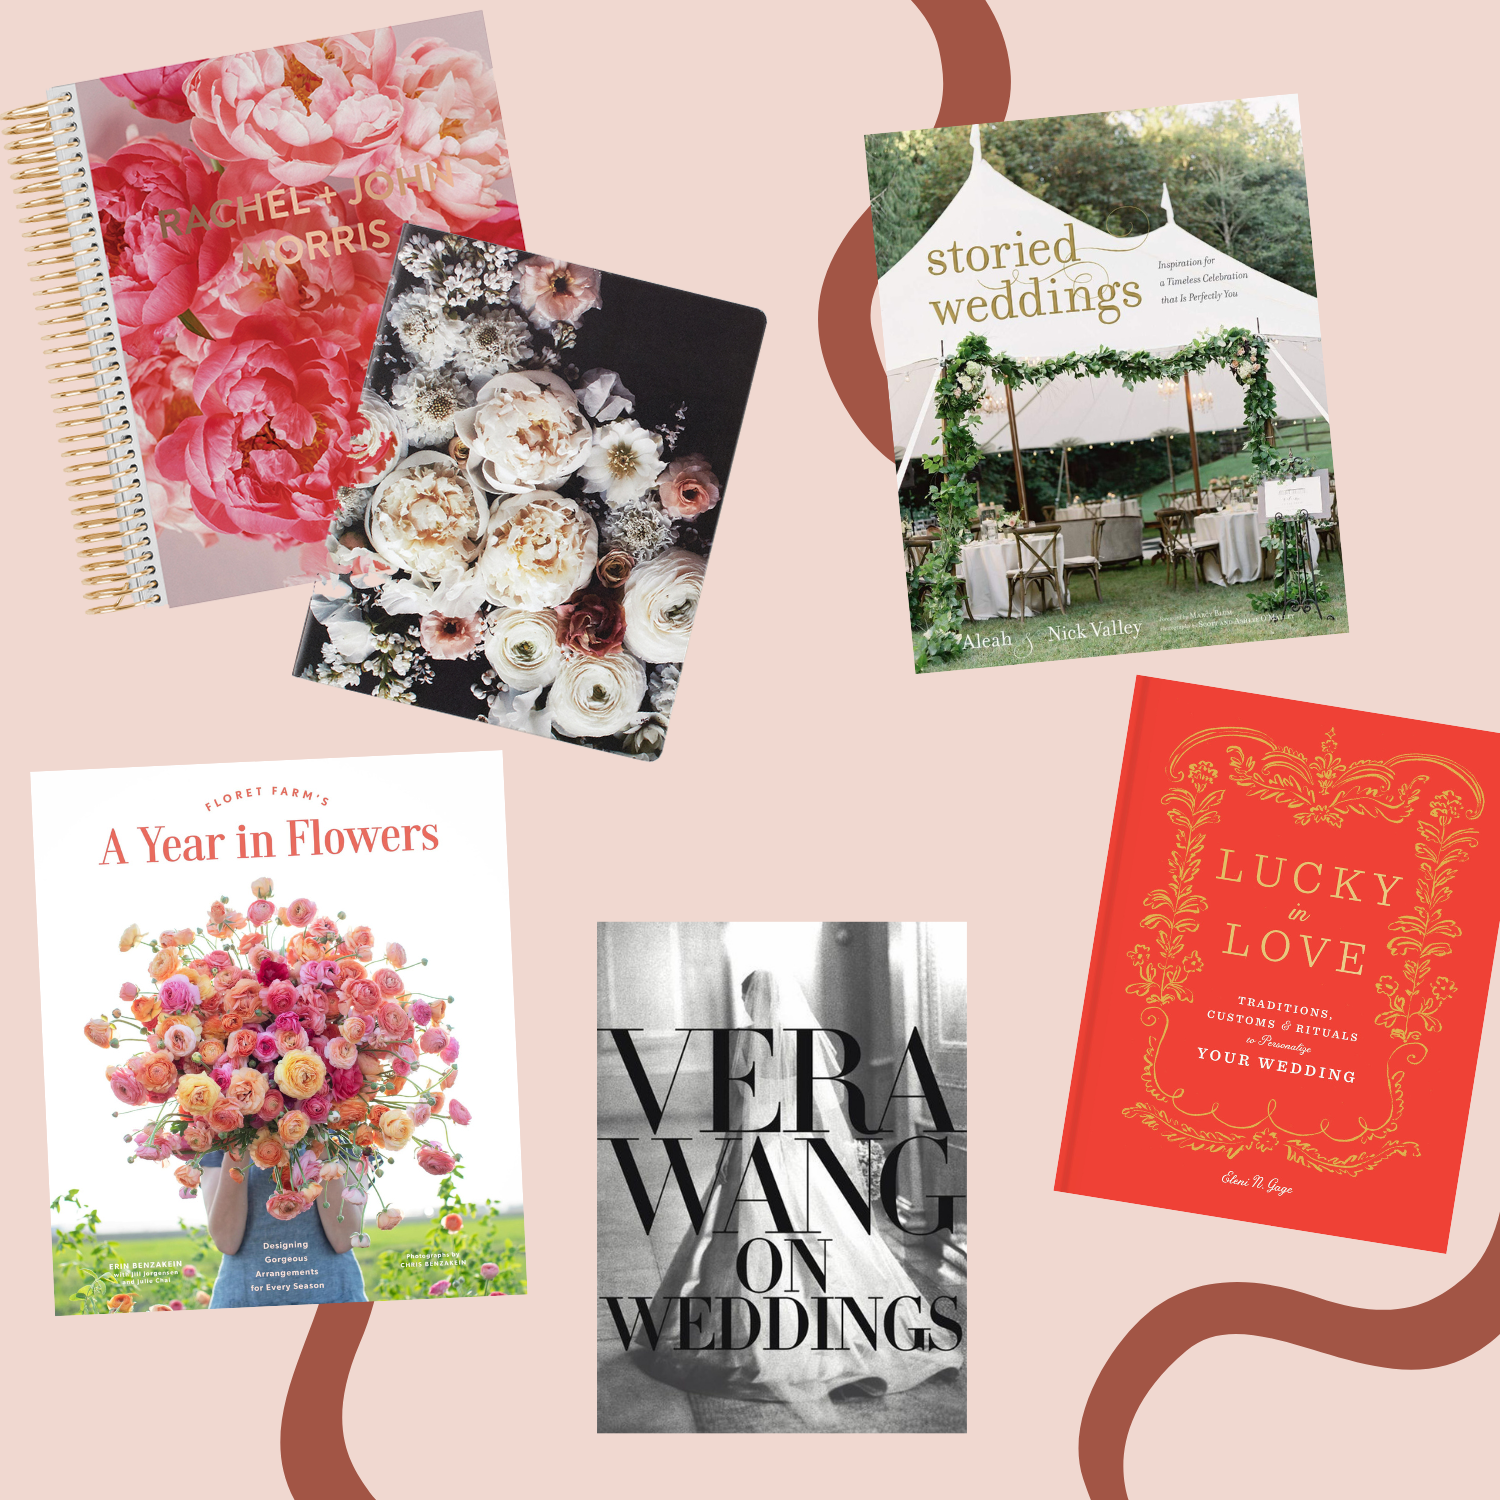 Best Wedding Planning Books